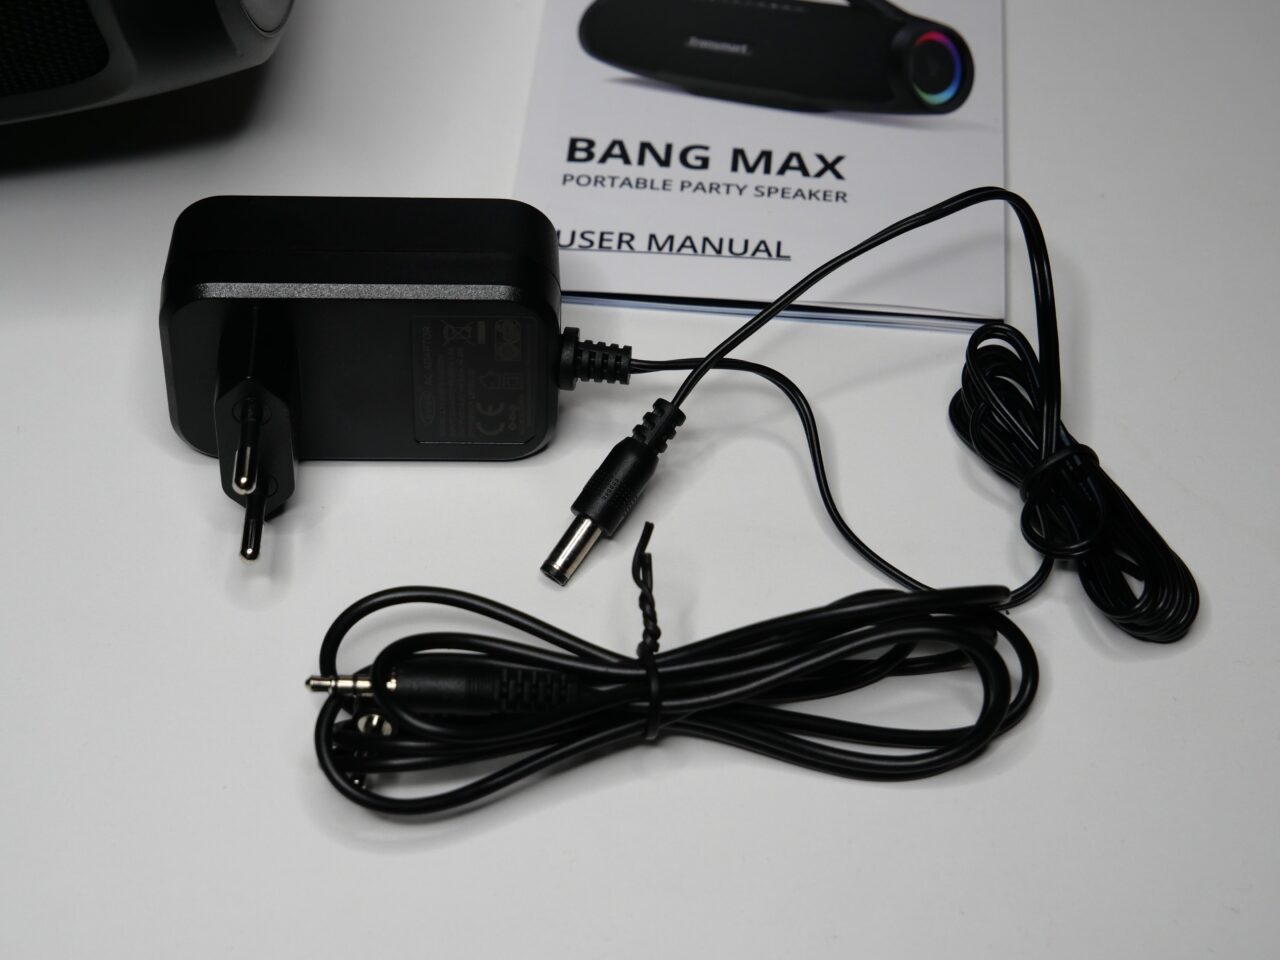 Czarny zasilacz sieciowy oraz przewód ze złączem typu jack na białym tle obok instrukcji obsługi głośnika przenośnego BANG MAX.